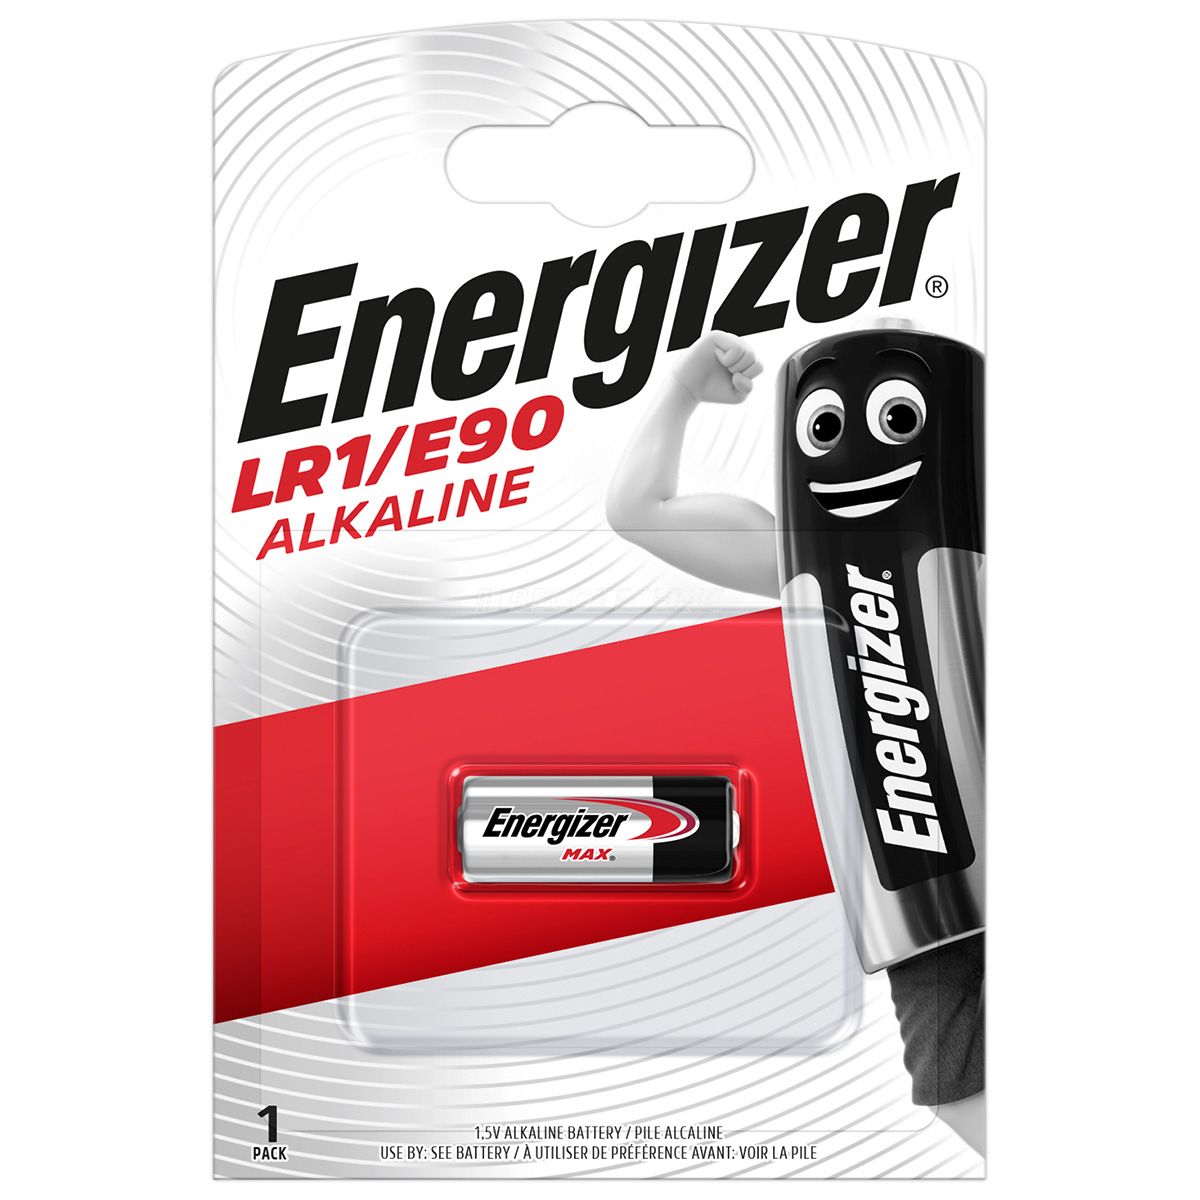 Energizer Lady 1,5 volt Alkaline in a blister LR1/E90